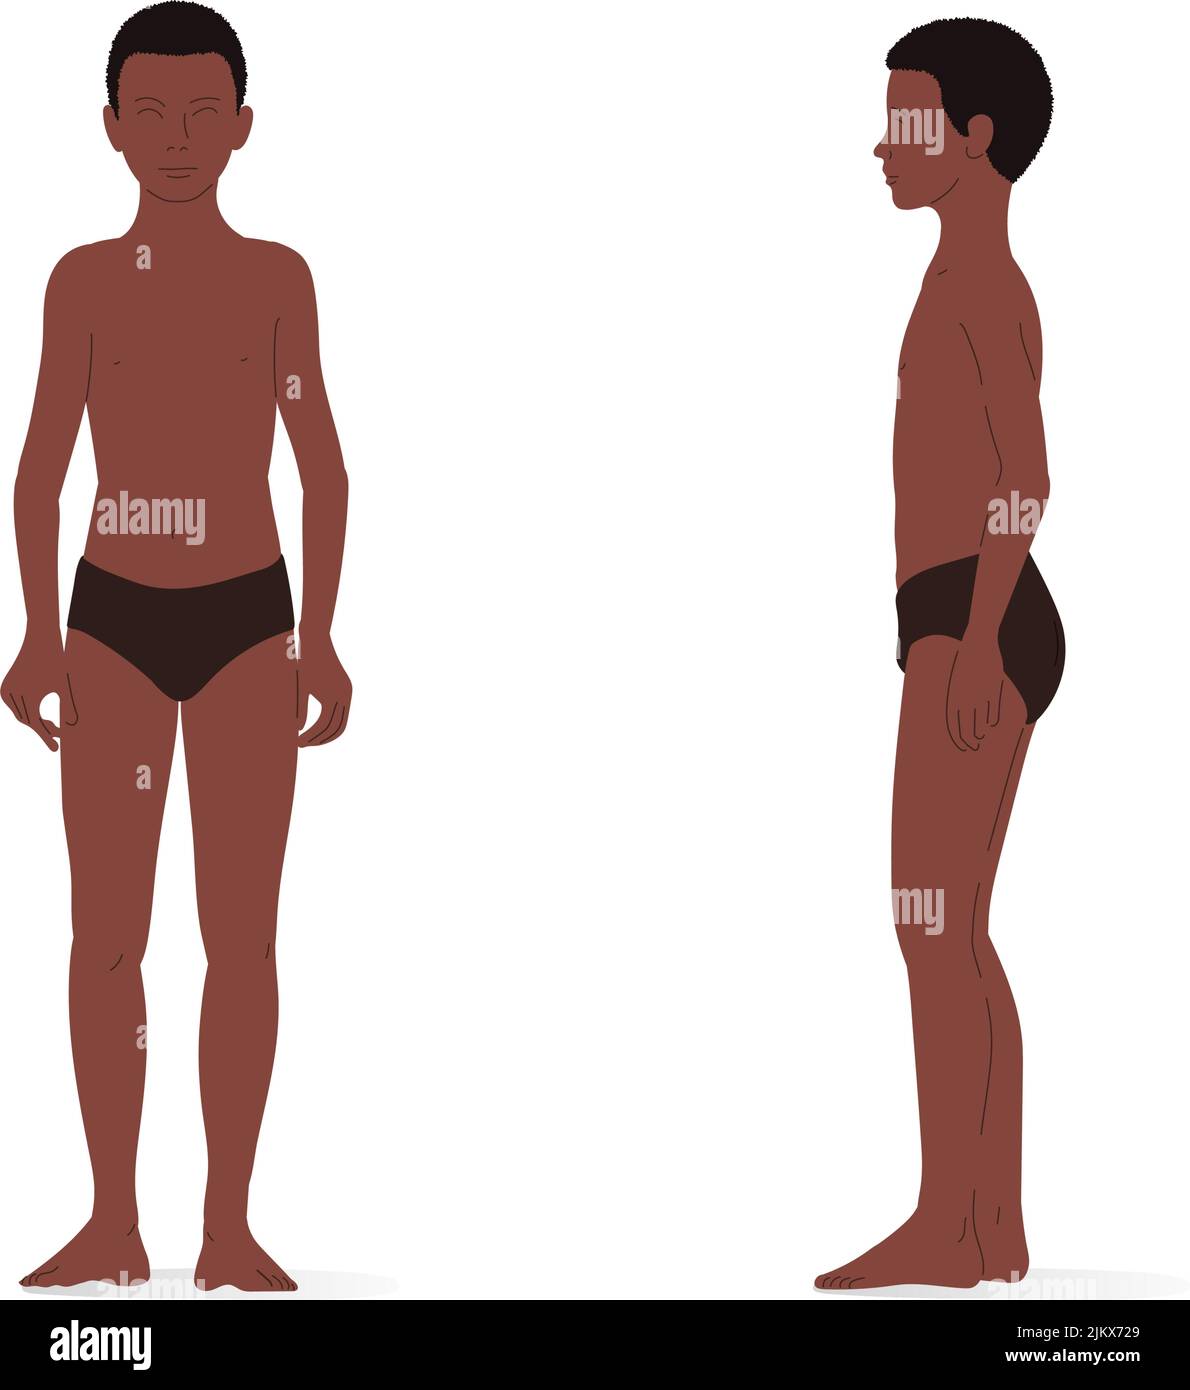 Jeune garçon, tout le corps d'un garçon, vue avant et latérale. Illustration vectorielle isométrique d'une personne debout et d'une personne marchant. Illustration de Vecteur